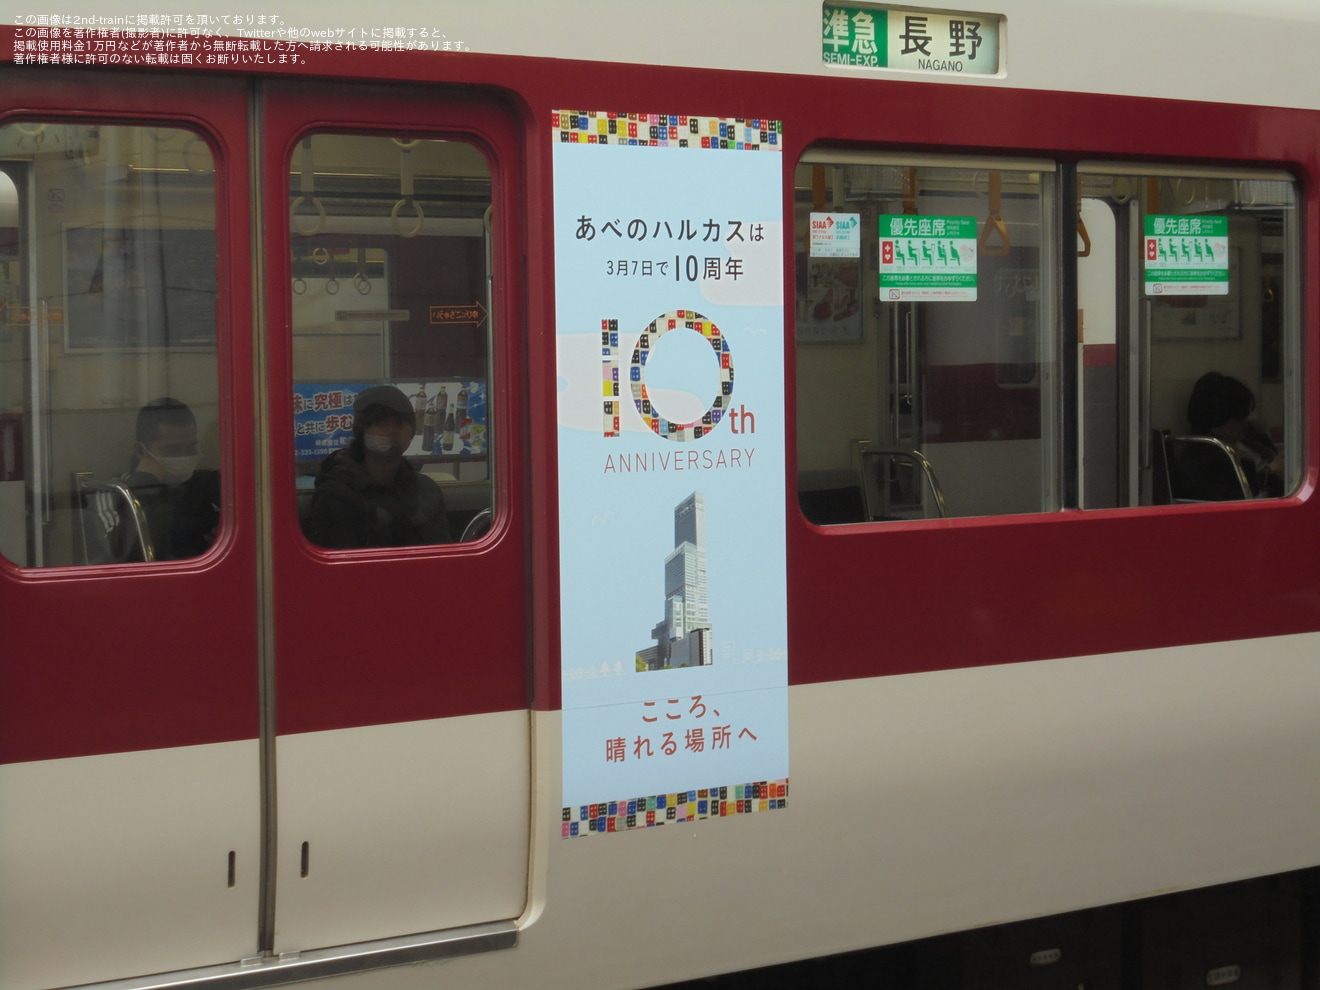 【近鉄】6407系Mi09・Mi10にあべのハルカス10周年記念のラッピングが装飾の拡大写真